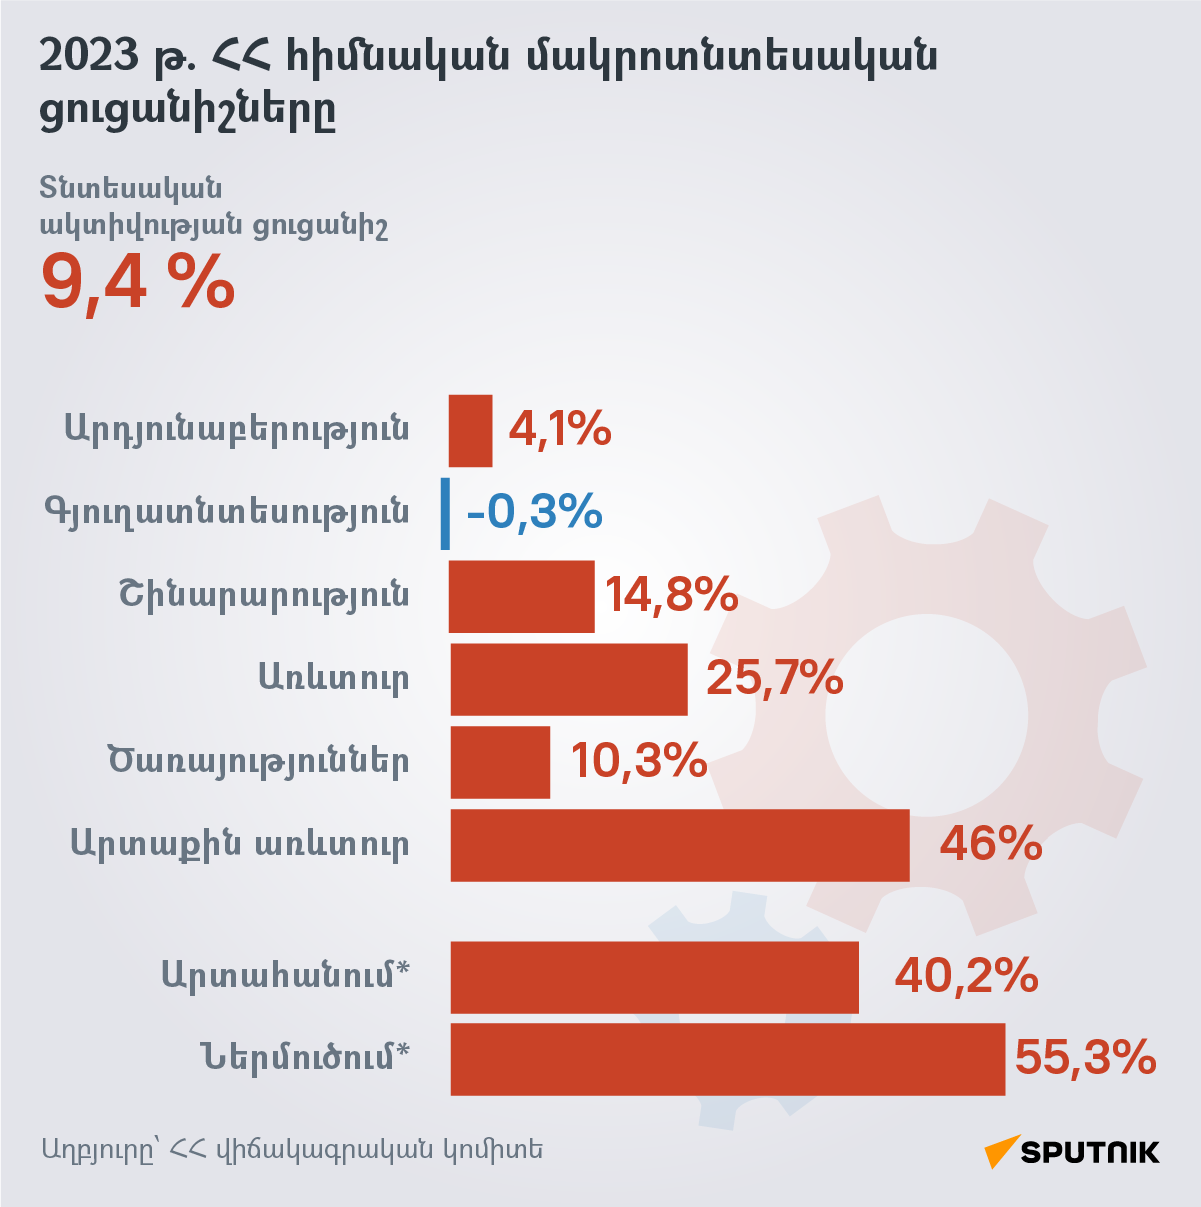 2023 թ. ՀՀ հիմնական մակրոտնտեսական ցուցանիշները - Sputnik Արմենիա